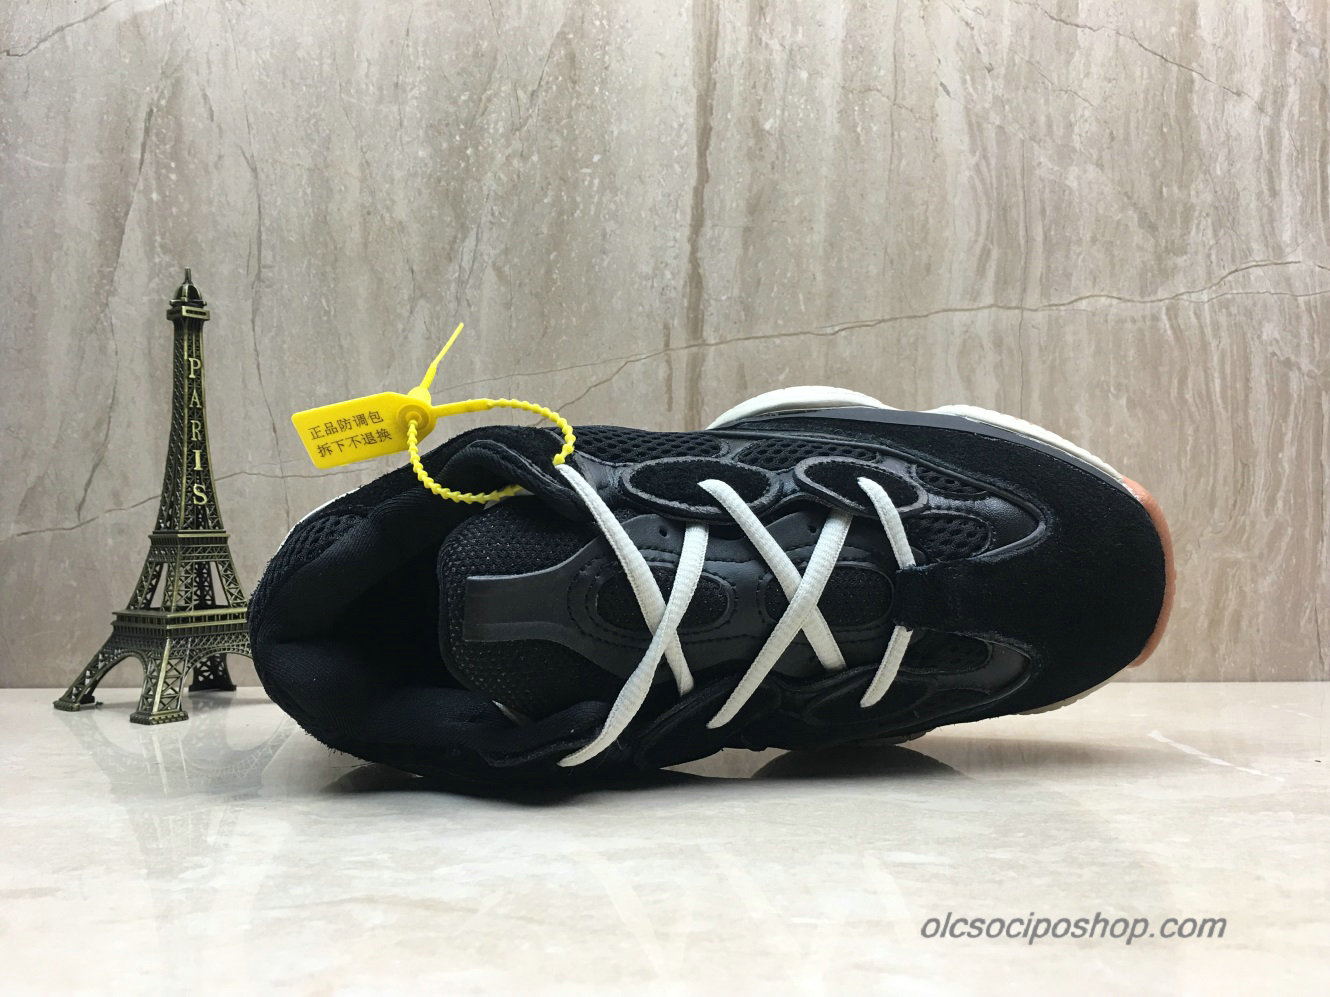 Adidas Yeezy Desert Rat 500 Blush Fekete/Piszkosfehér Cipők (F36680) - Kattintásra bezárul